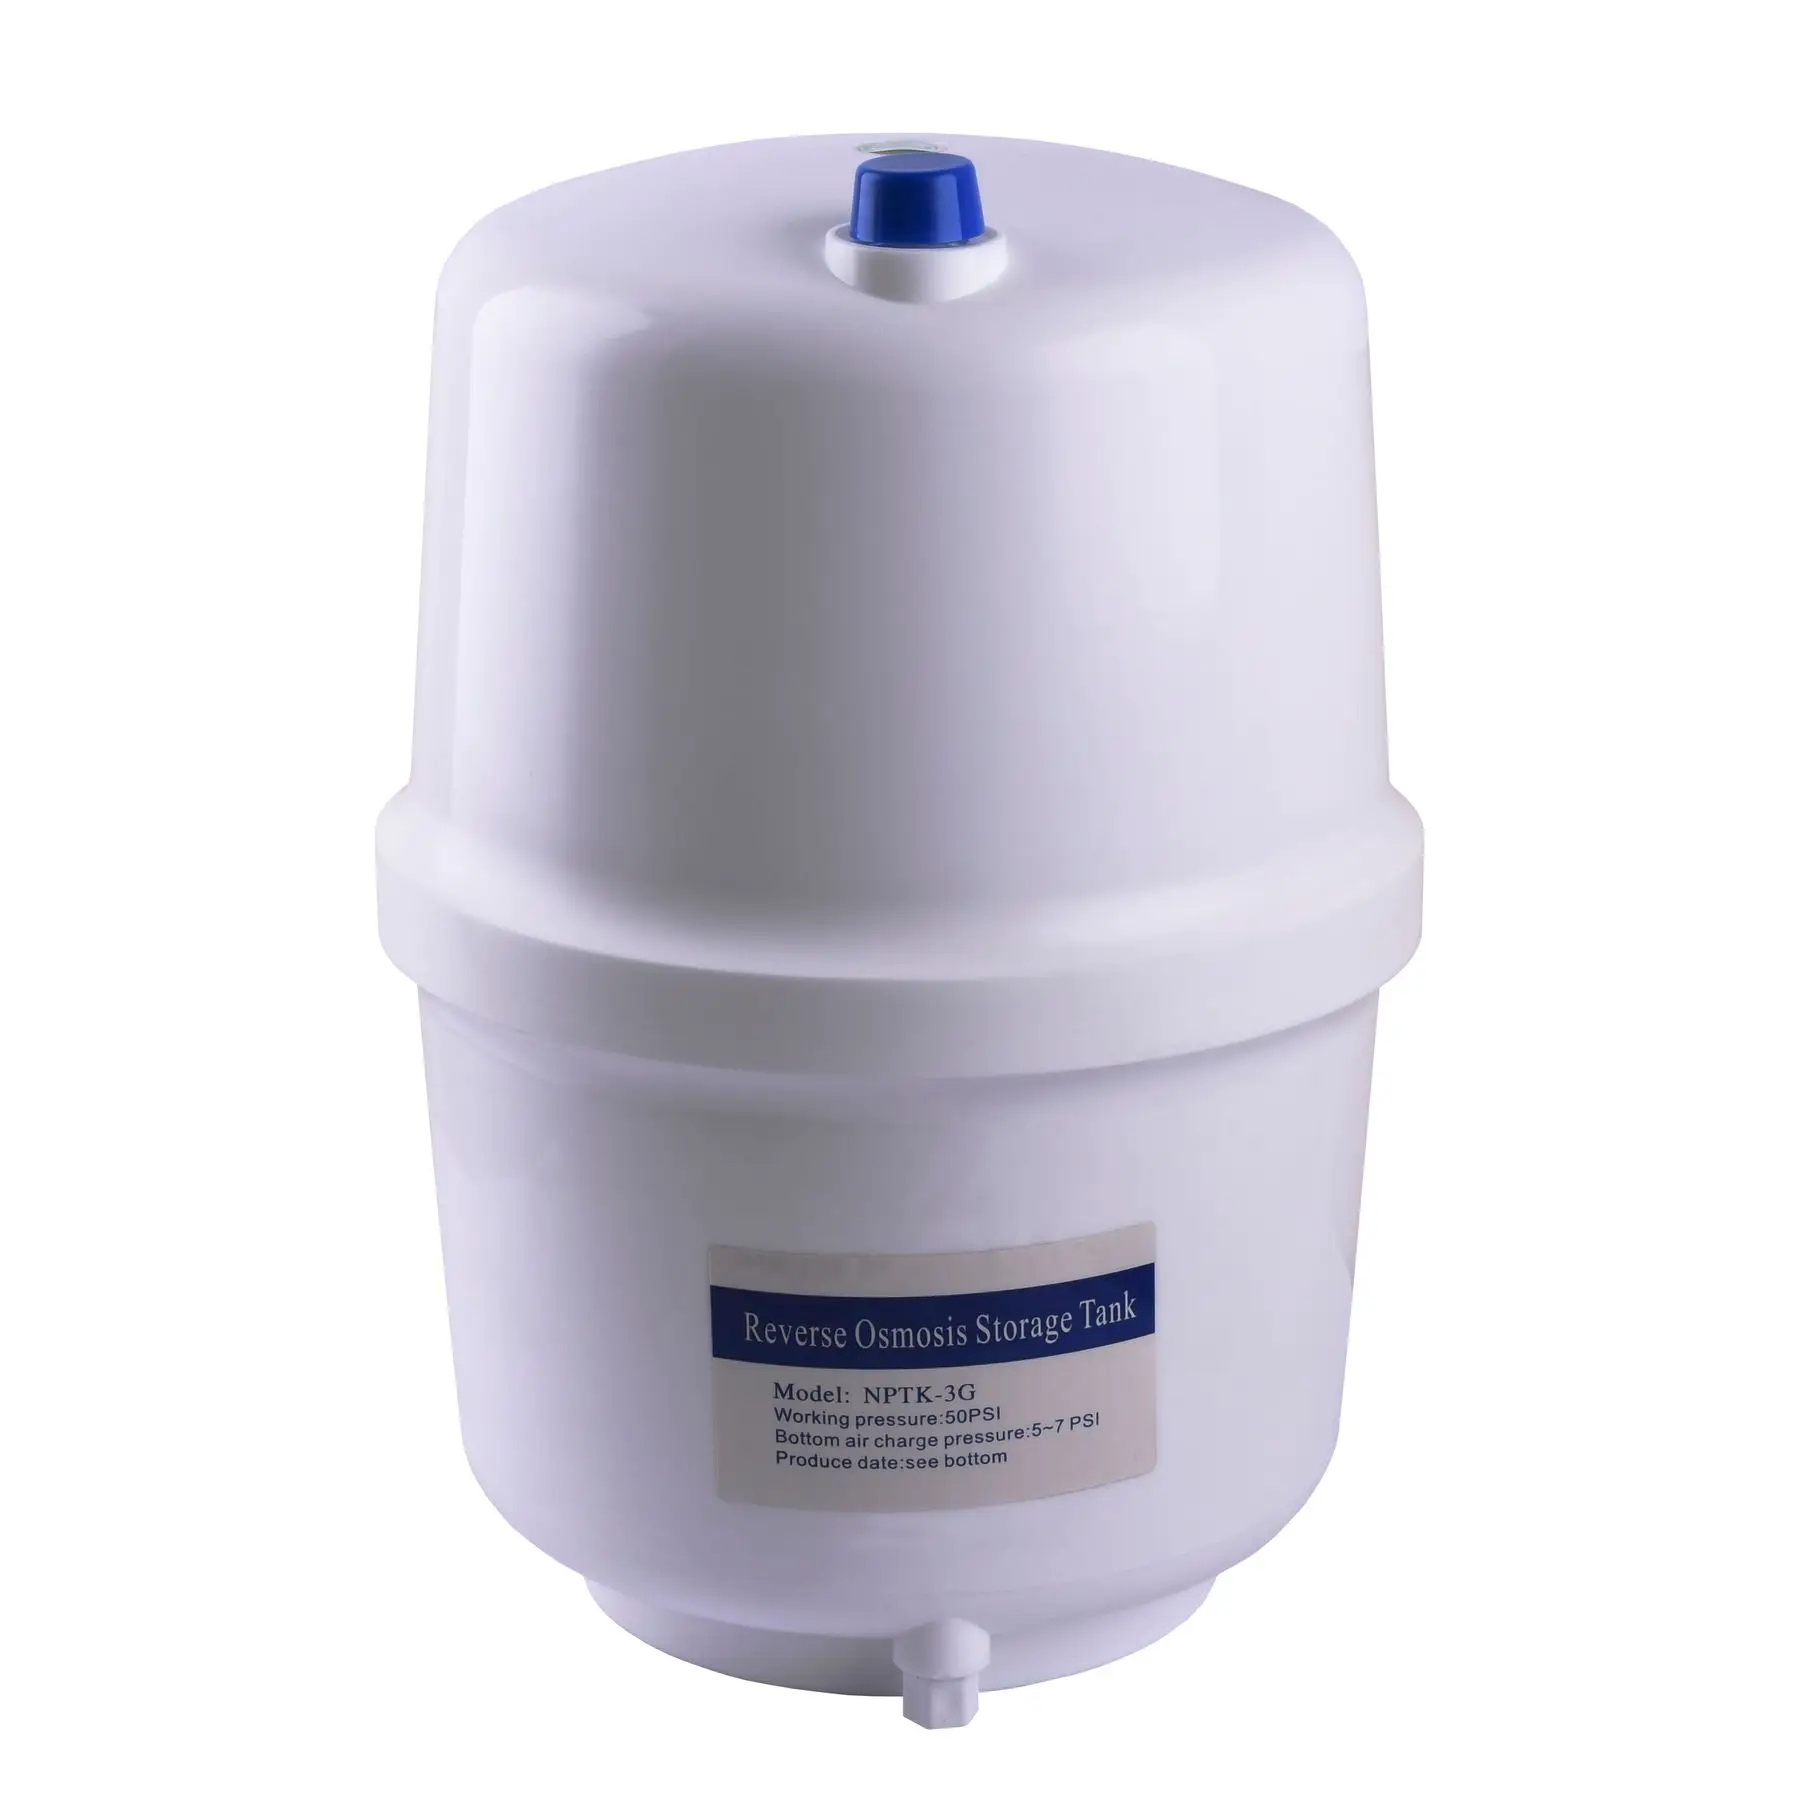 Фильтр для воды OasisPro BSL02M-RO-75 насос + пласт. бак, минерализатор, блок управления отзывы - изображения 5